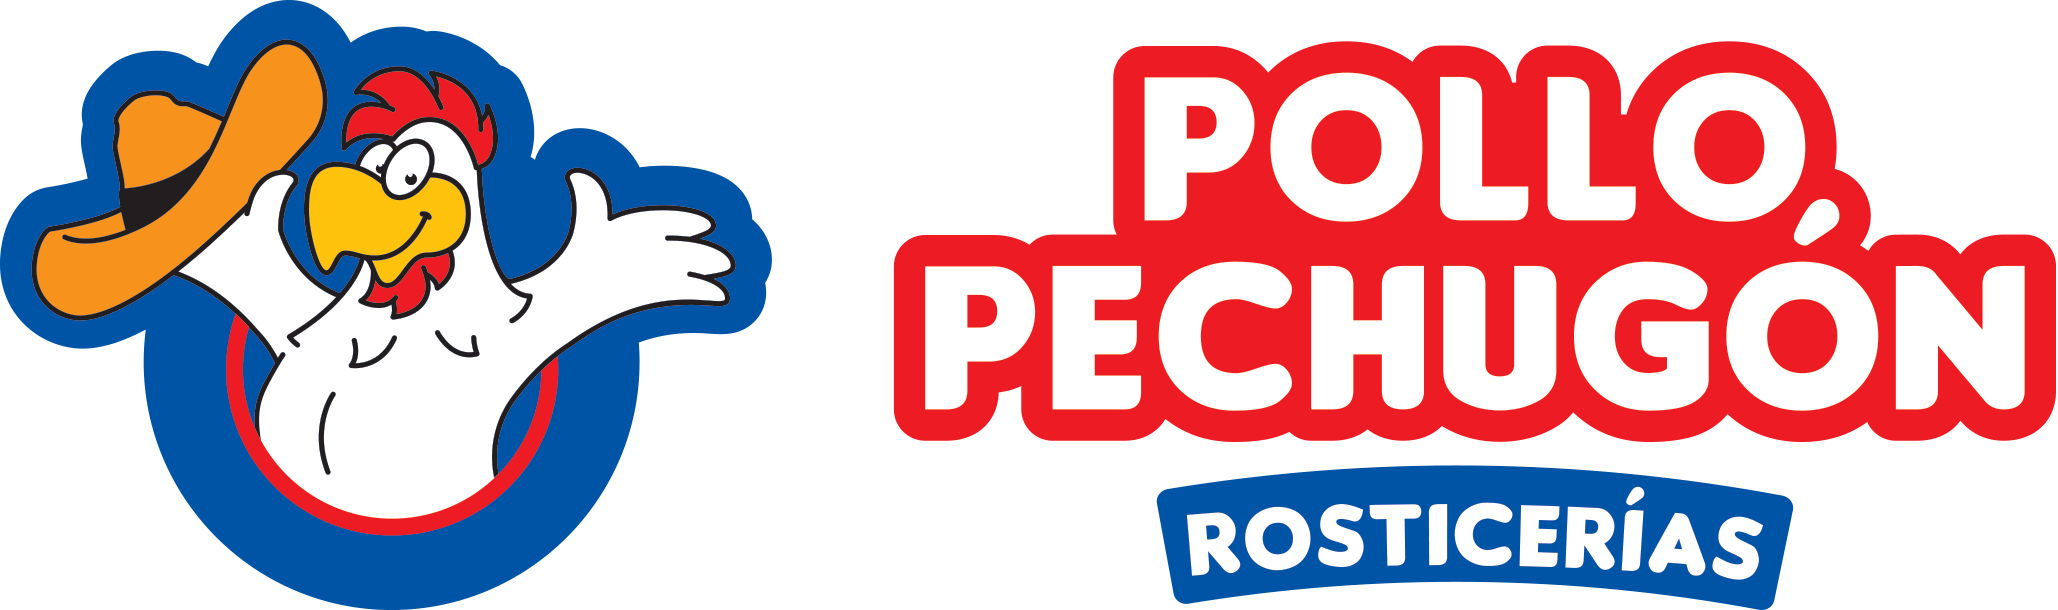 pechugon logo